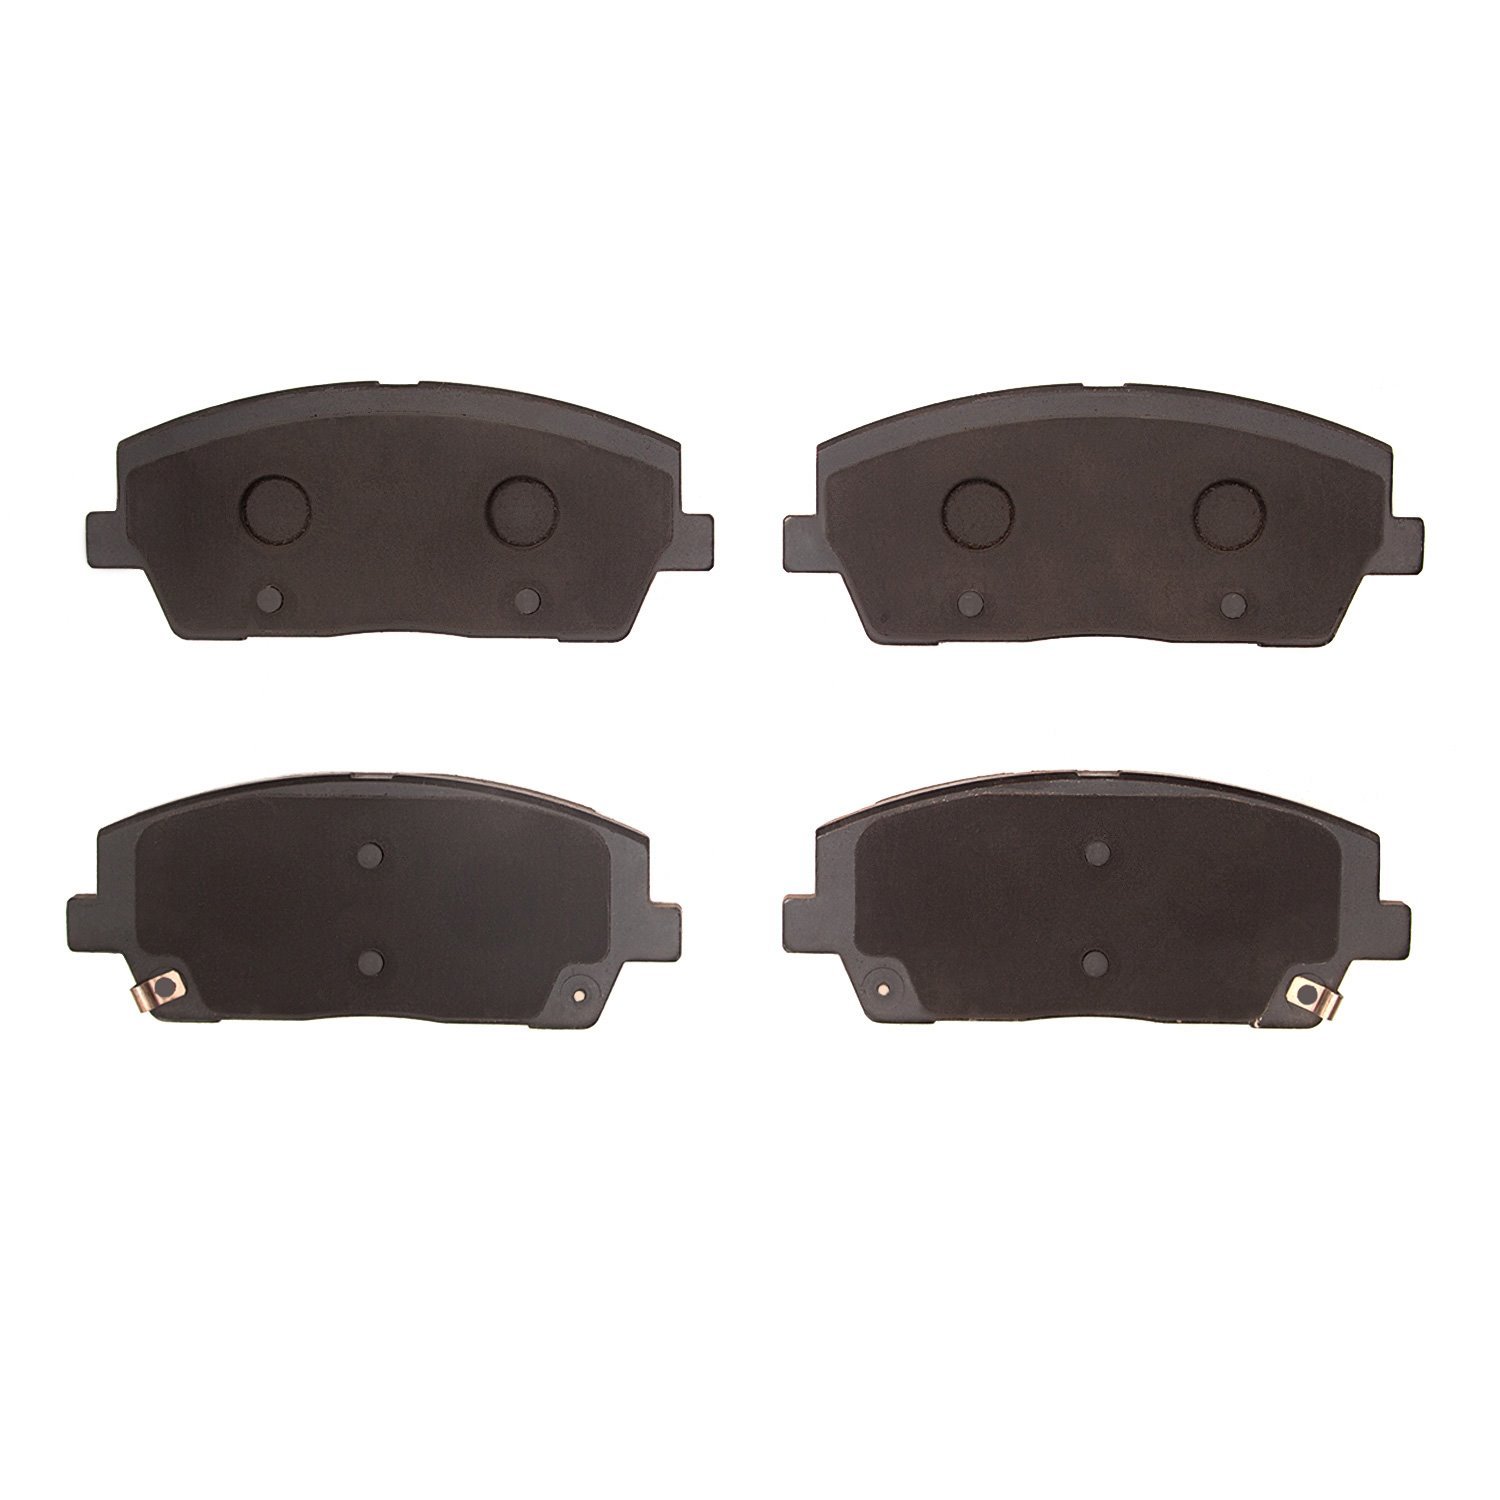 1310-2215-00 3000-Series Ceramic Brake Pads, Fits Select Kia/Hyundai/Genesis, Position: Front